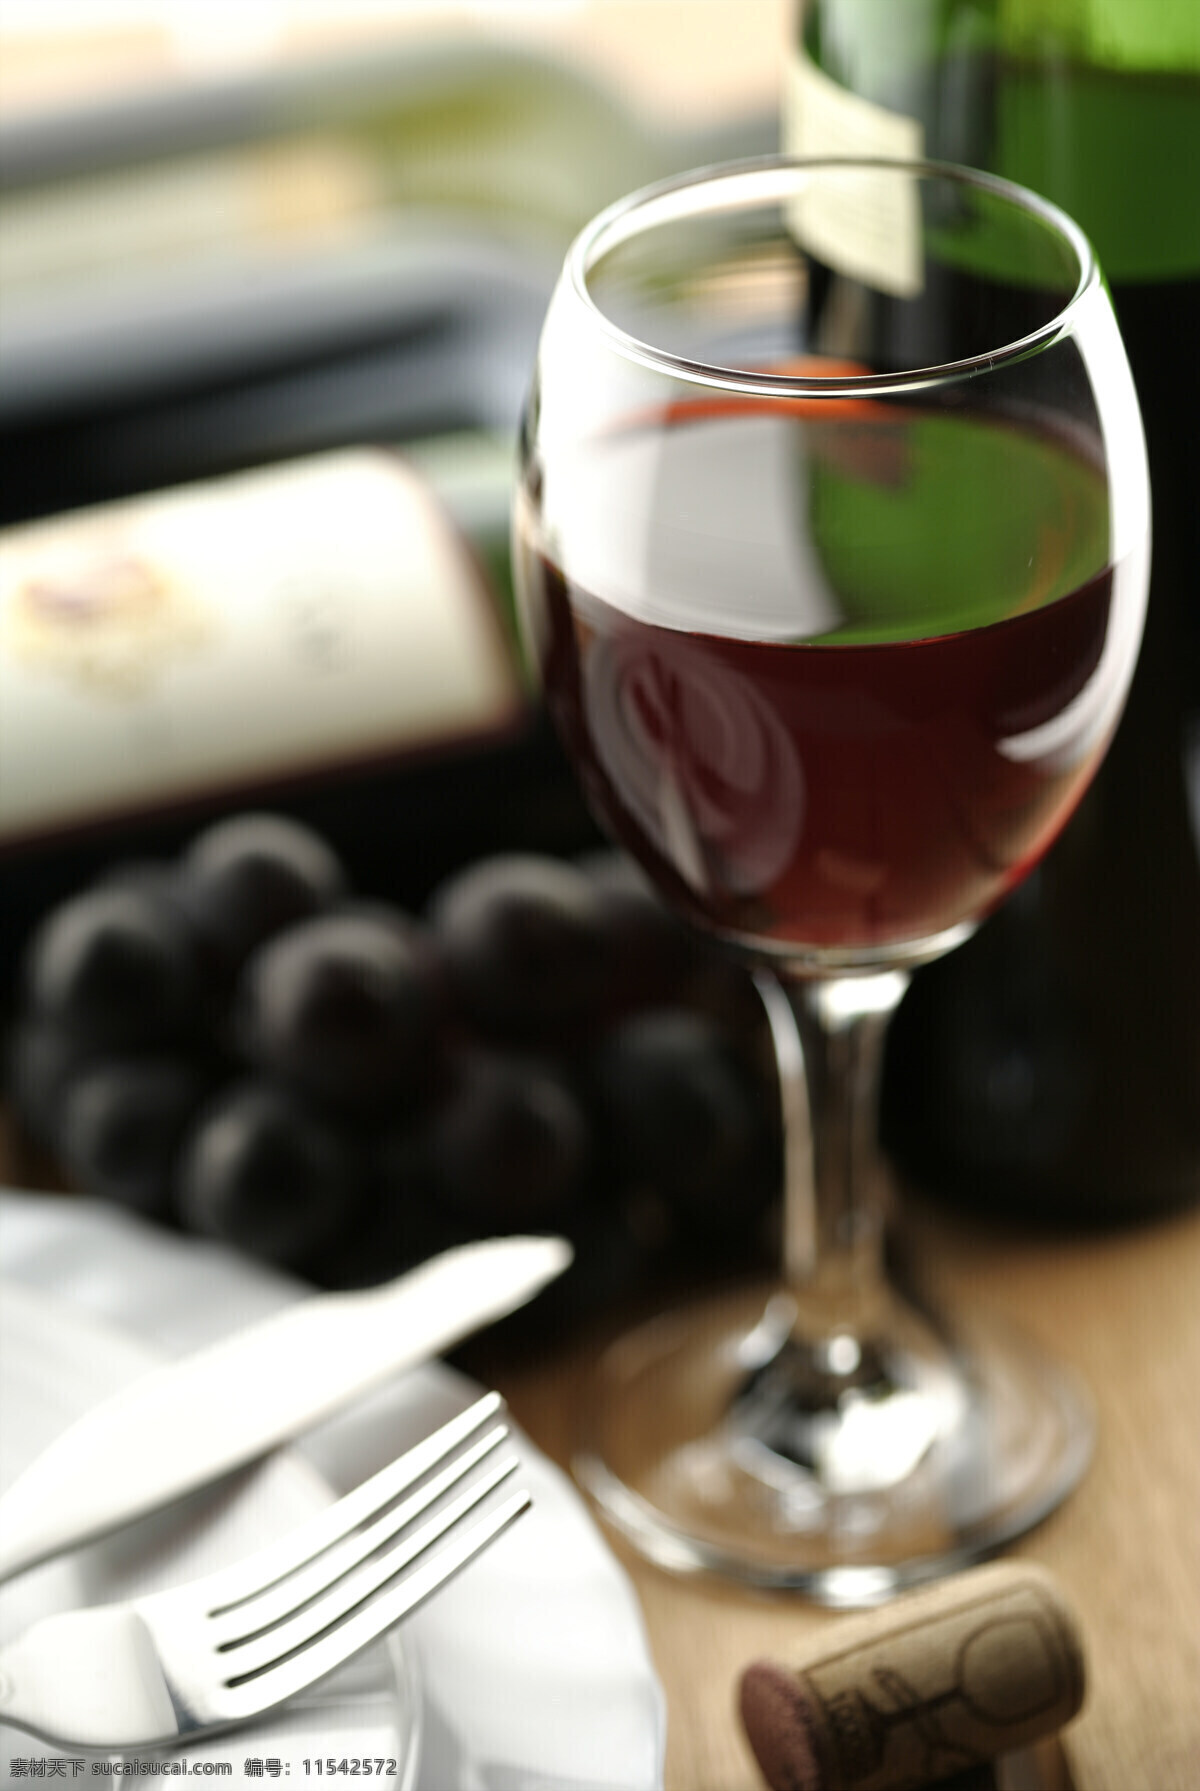 红葡萄酒 特写 葡萄酒 酒杯 紫葡萄 盘子 叉子 餐饮 高脚杯 高清图片 酒类图片 餐饮美食